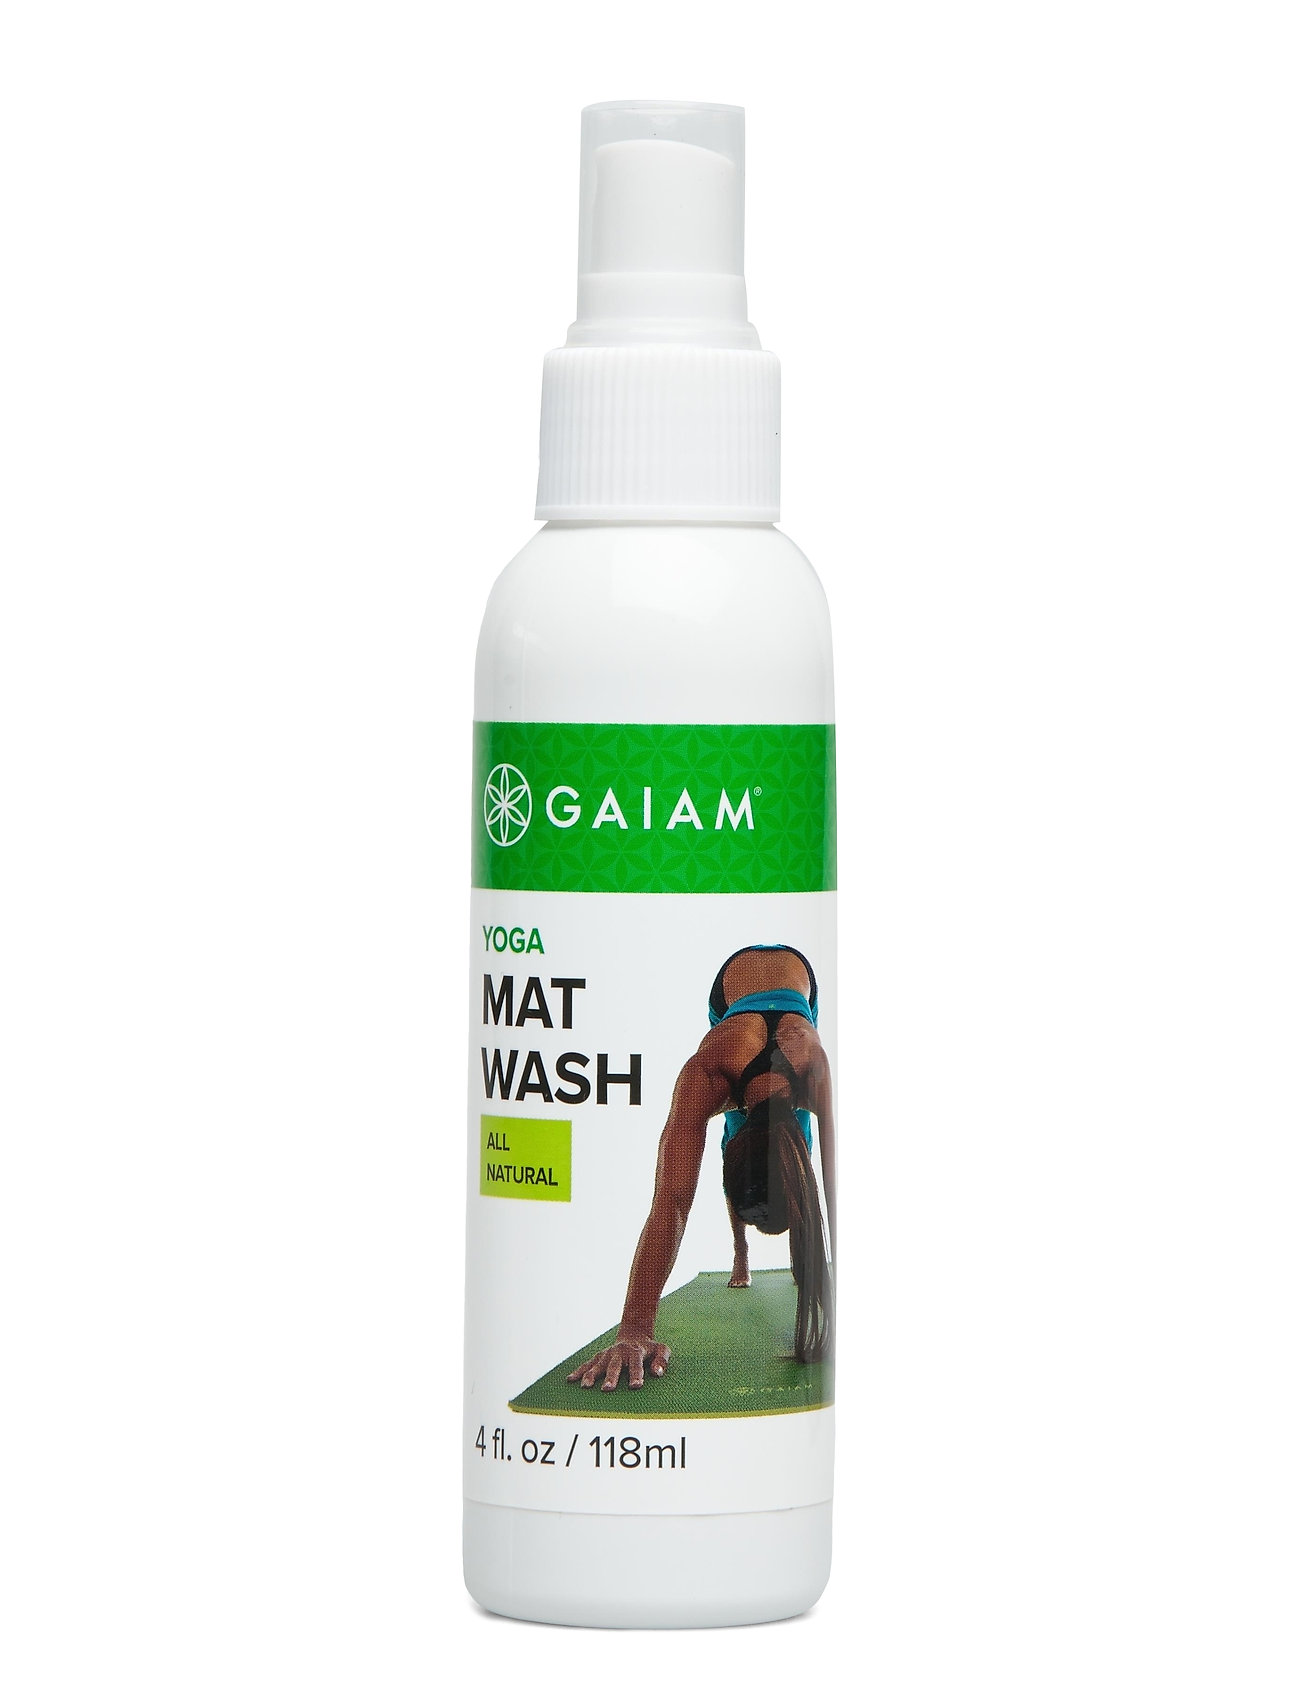 Gaiam Yoga Mat Wash Accessories Sports Equipment Yoga Equipment Yoga Mats And Accessories Valkoinen Gaiam